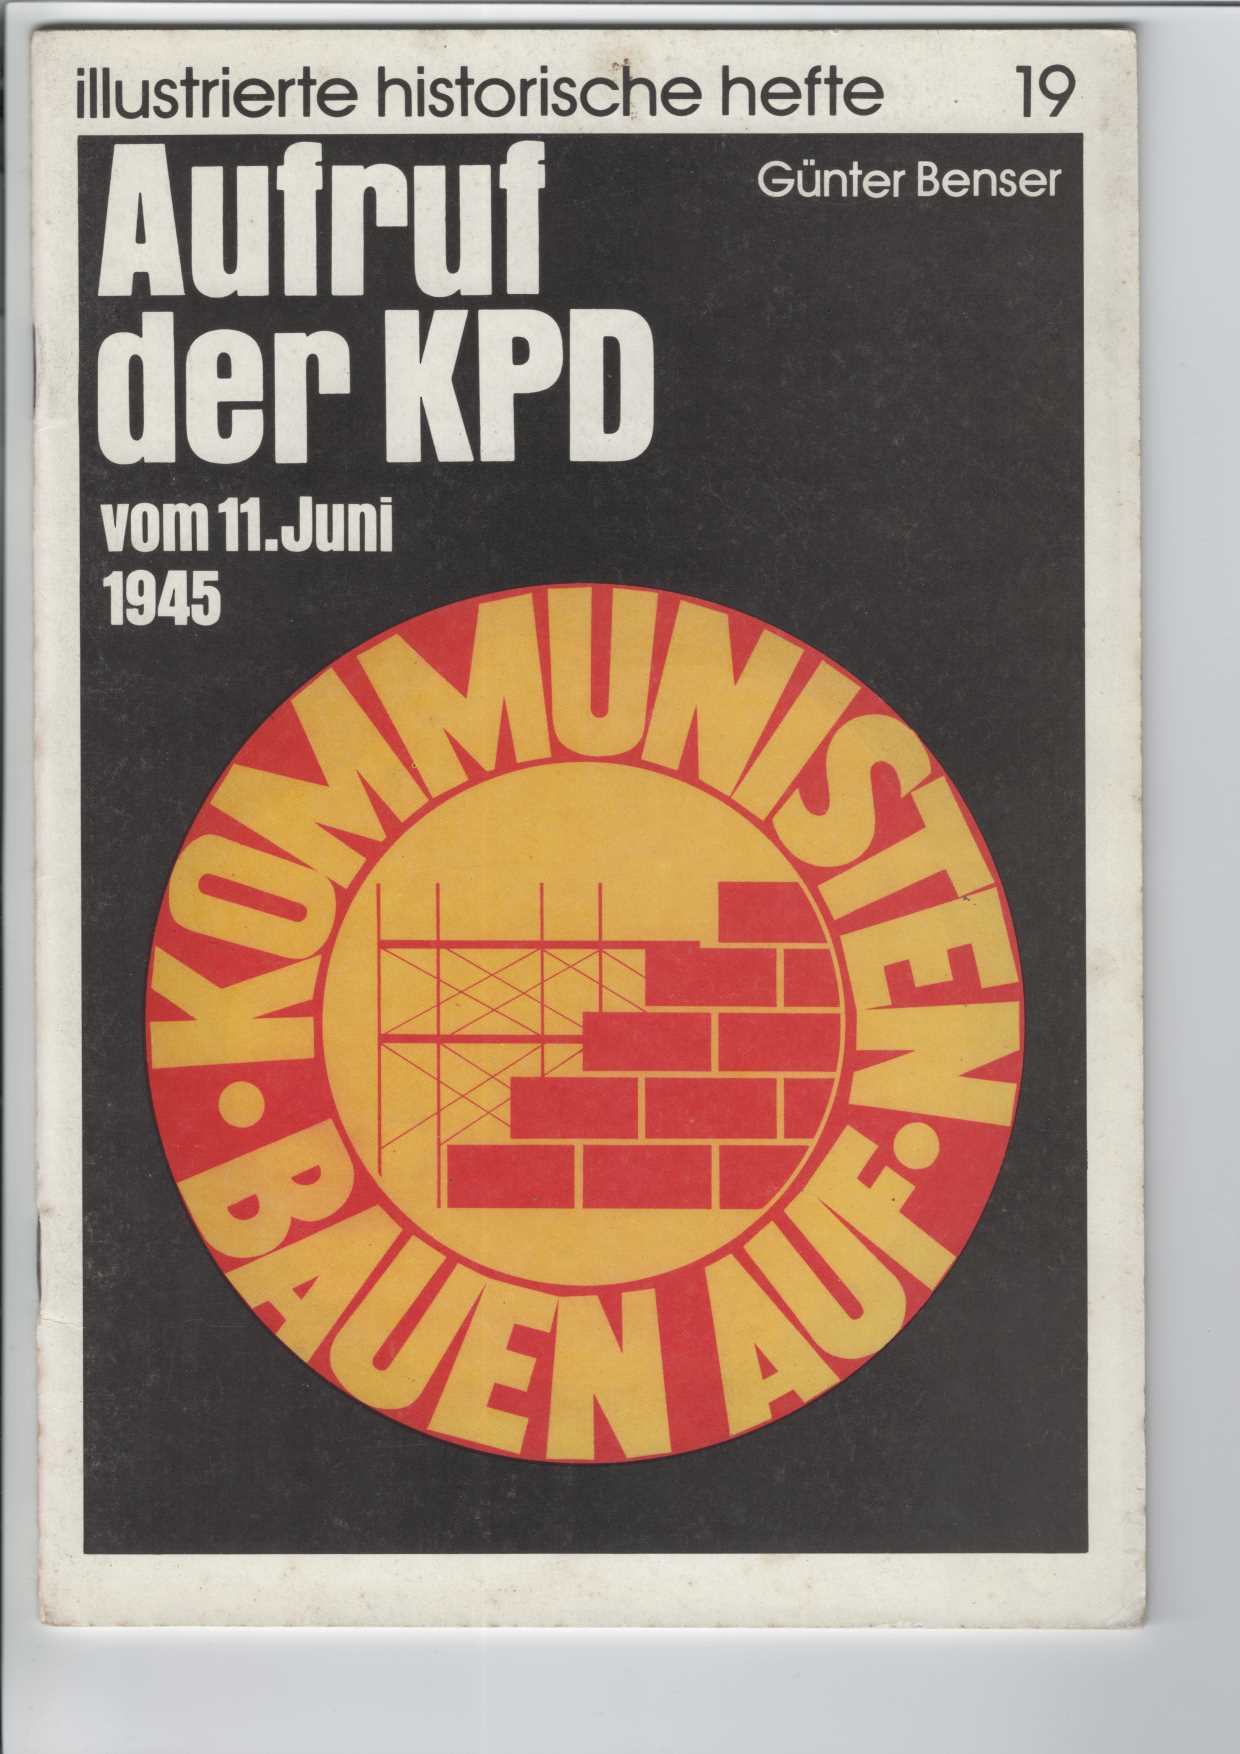 Benser, Gnter:  Aufruf der KPD vom 11. Juni 1945. 